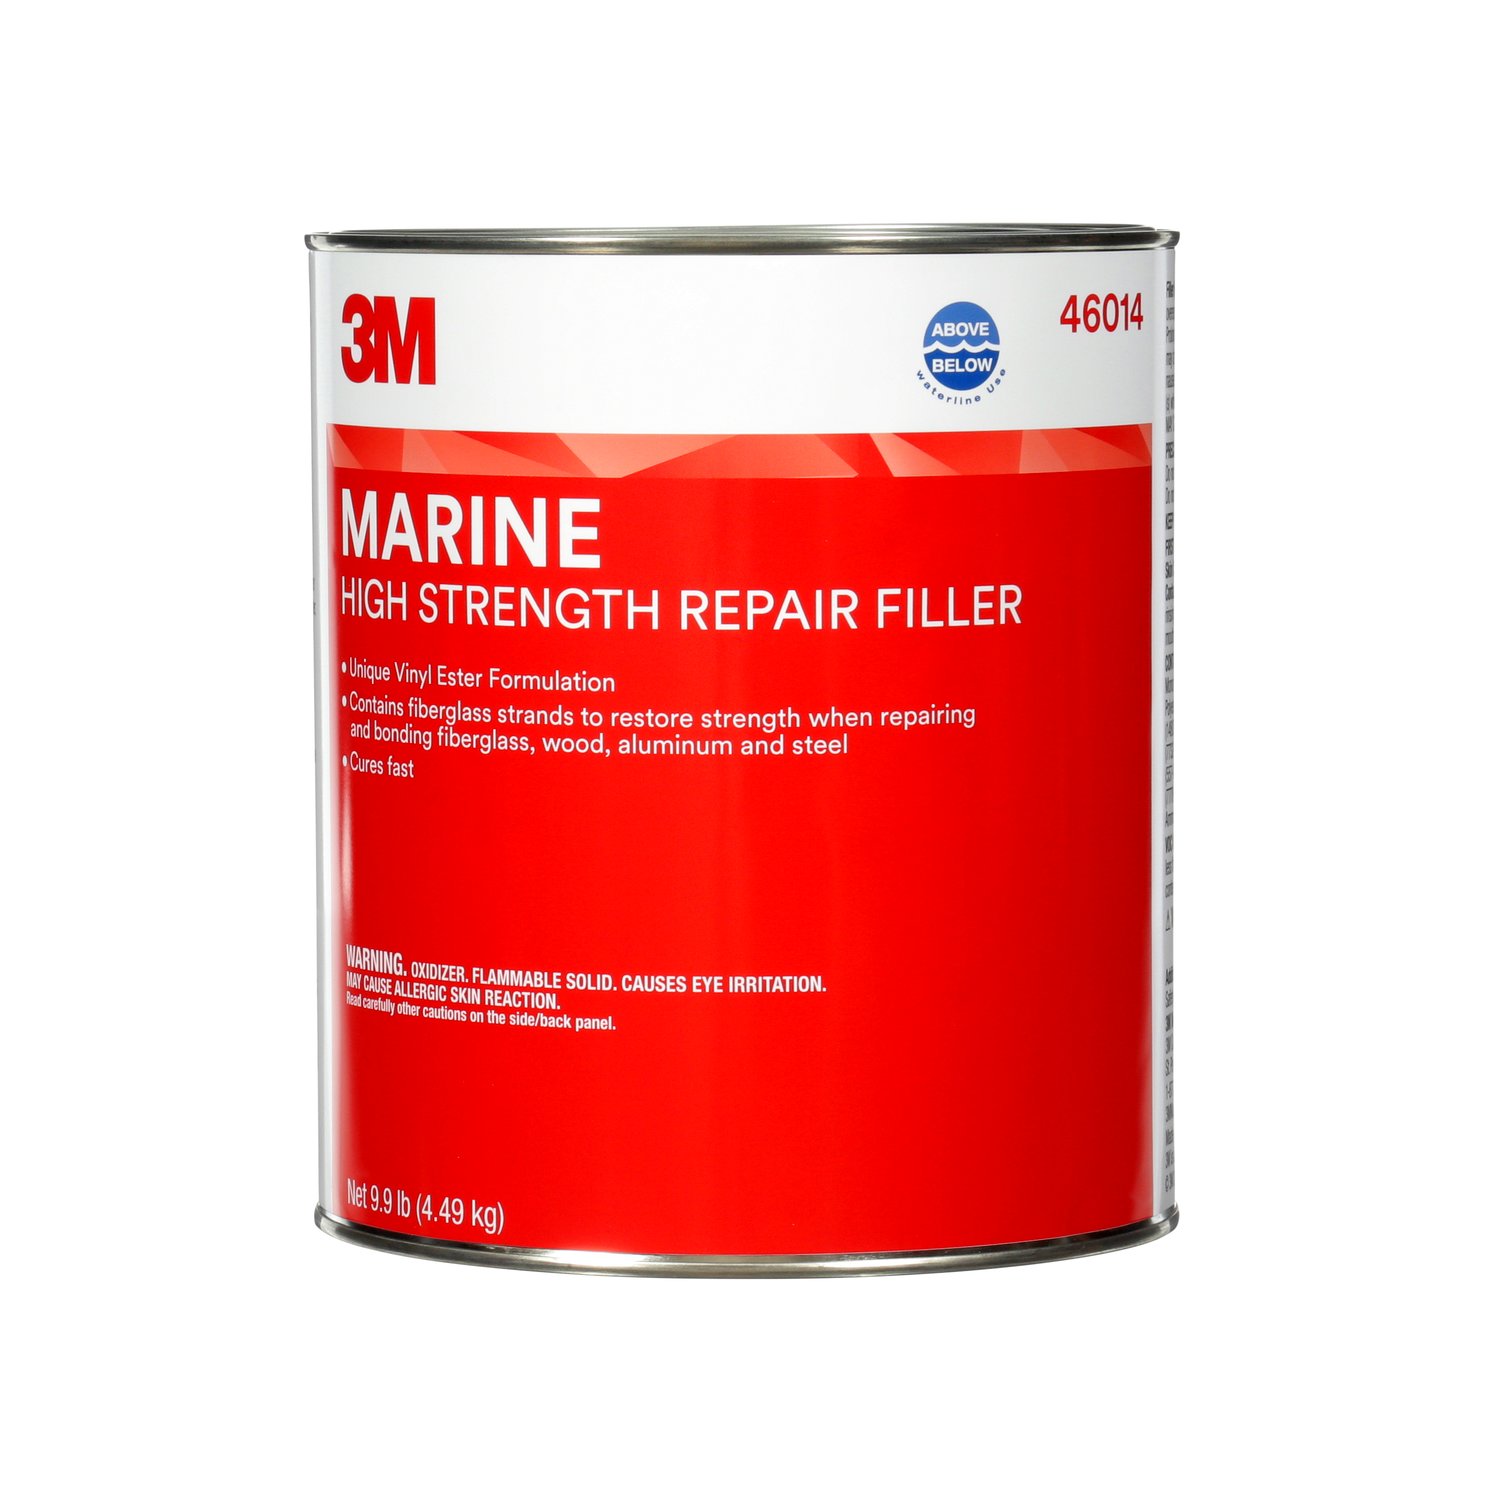 7000000605 - 3M Marine High Strength Repair Filler, 46014, 1 gal, 4 per case